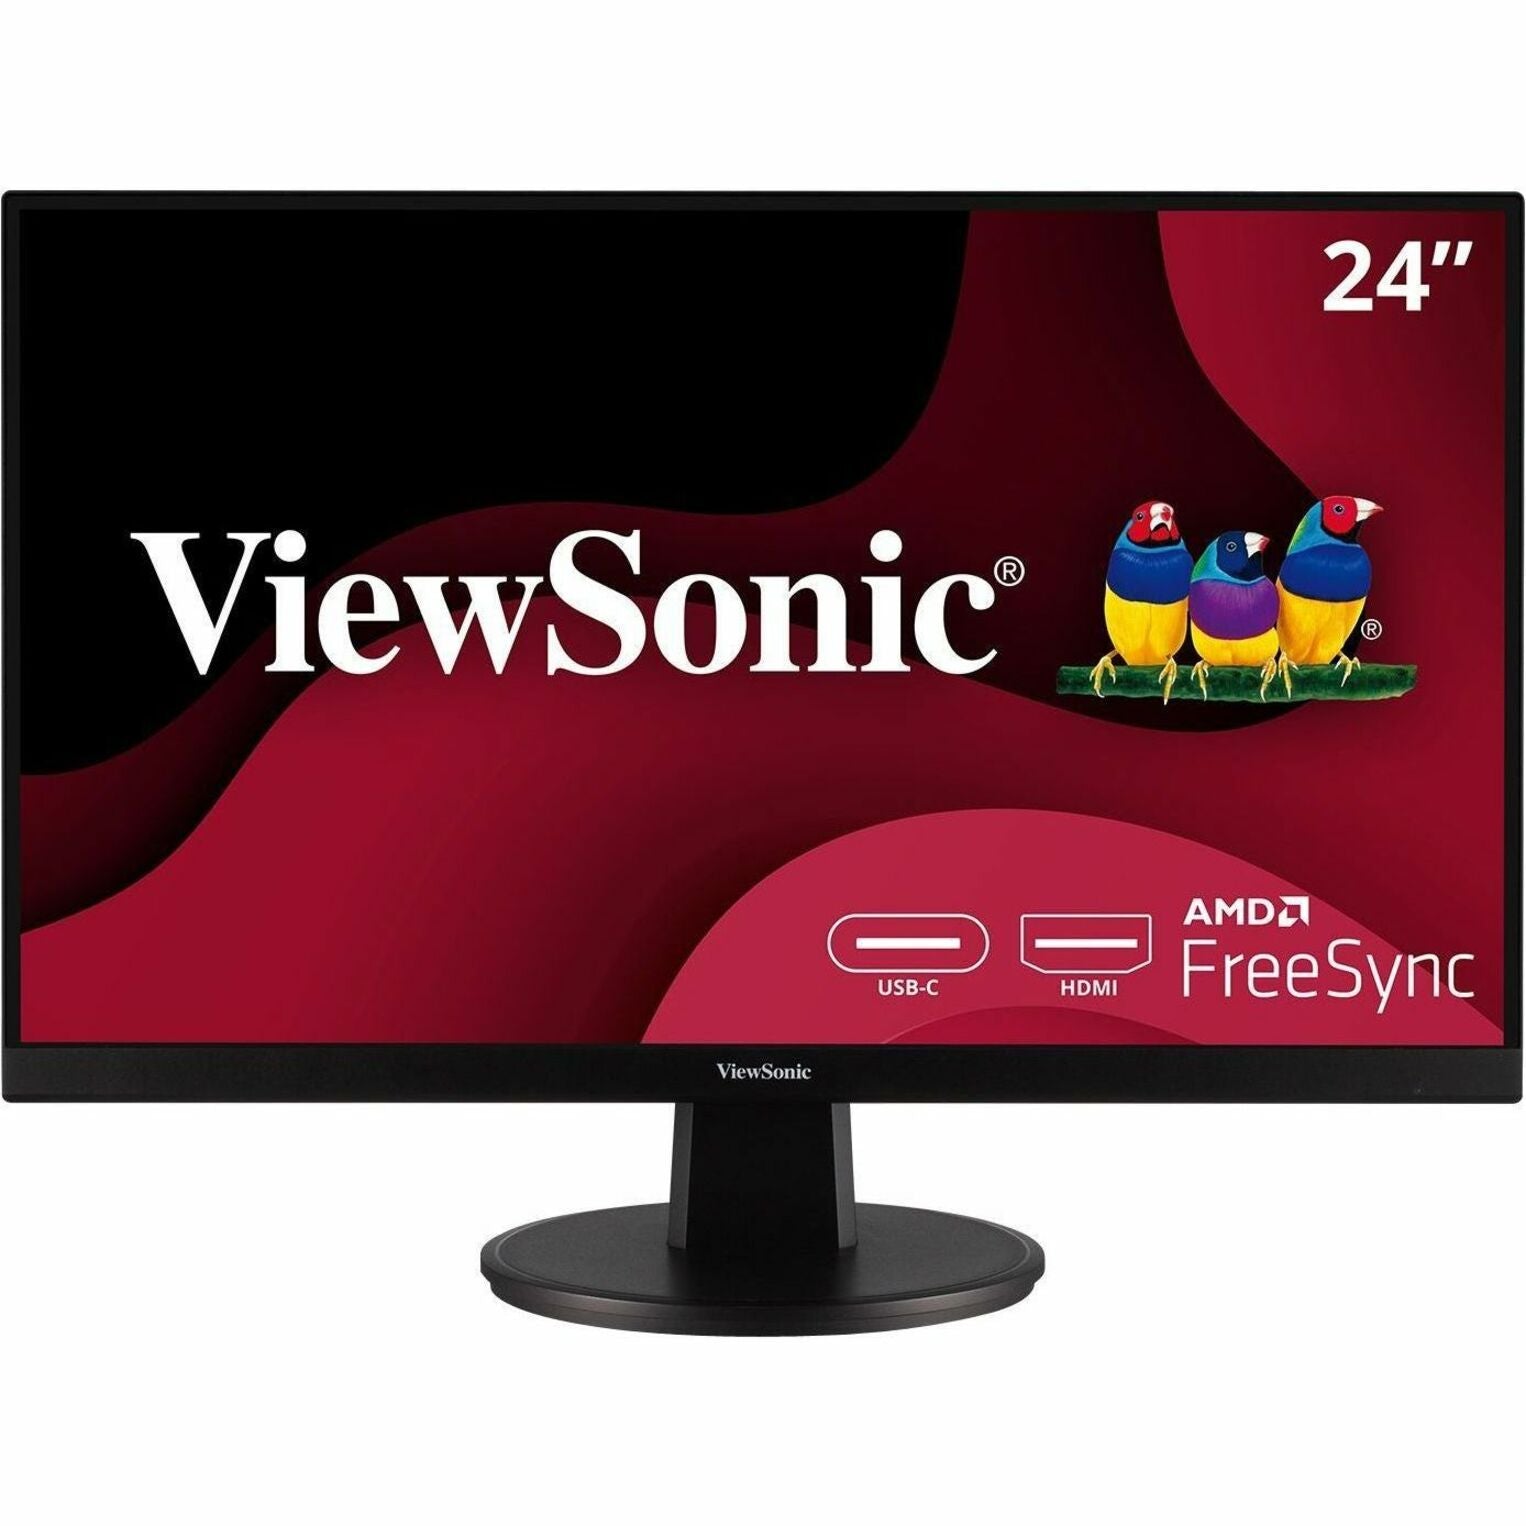 ViewSonic VA2447-MHU 24 1080p MVA Monitor with HDMI and USB-C, Flicker-free, FreeSync Premium, 75Hz Refresh Rate